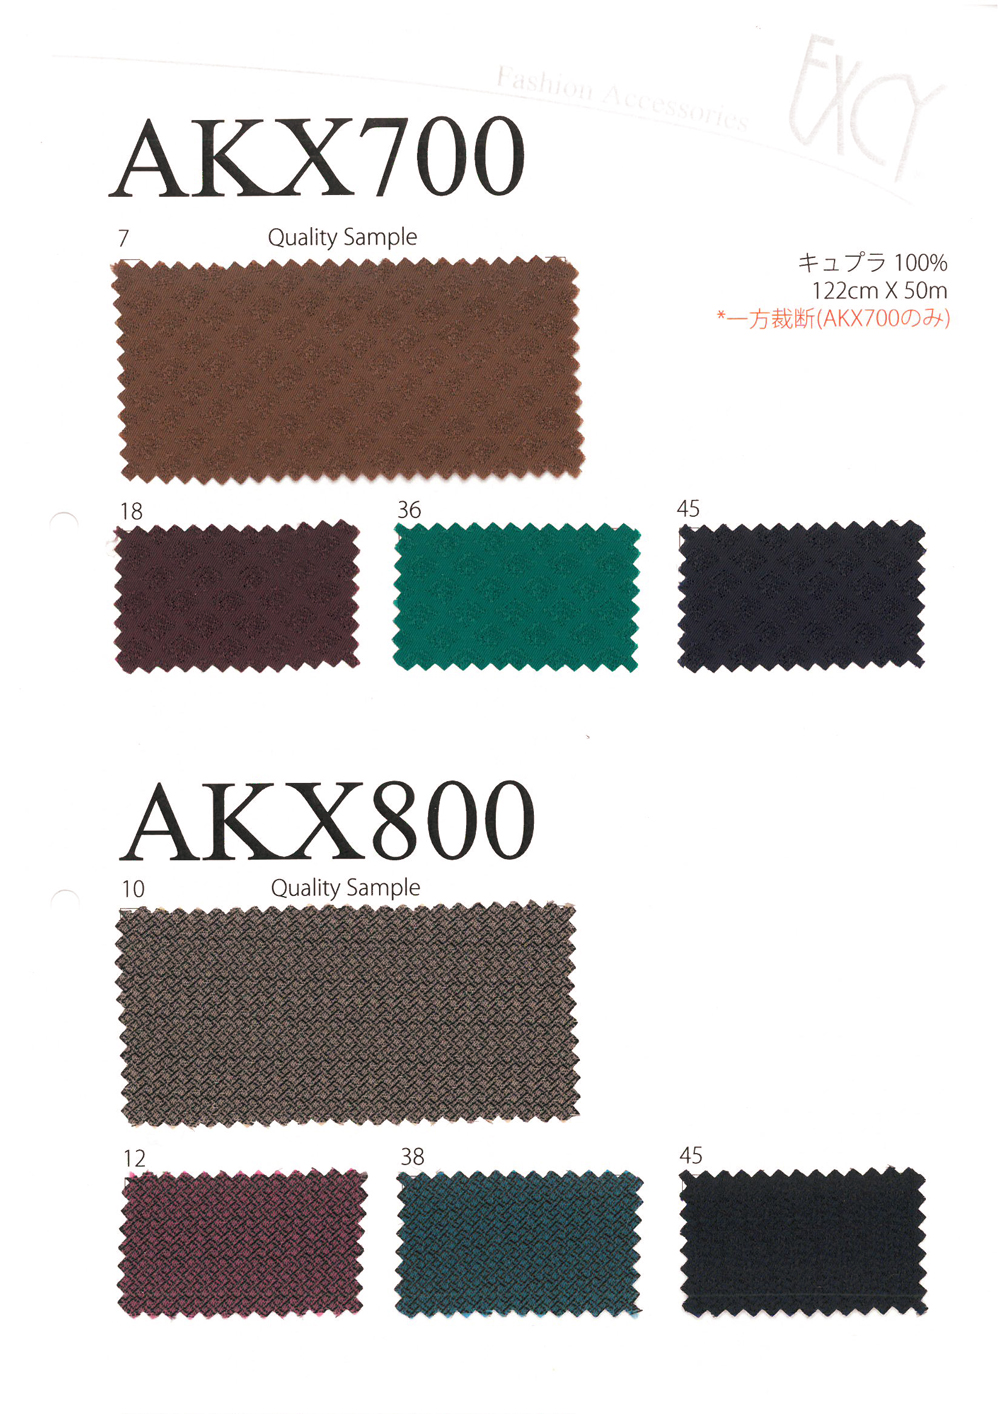 AKX700 Gạch Hoa Văn Vải Lót Jacquard Sang Trọng Asahi KASEI